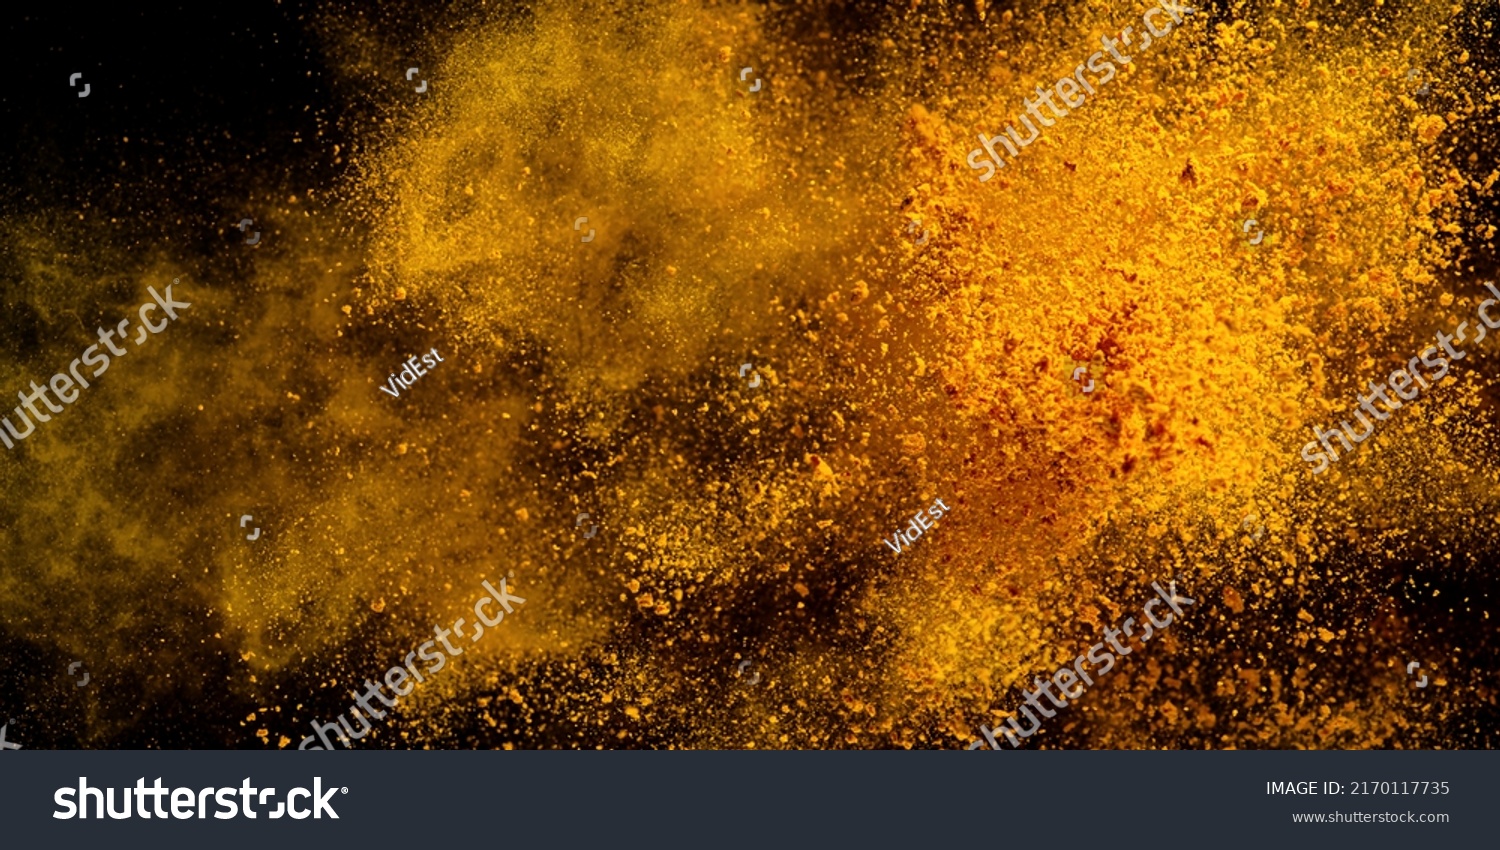 Explosion, Splashes of turmeric on a black background. India Seasoning. The orange powder of the turmeric root. Explosion of powder #2170117735